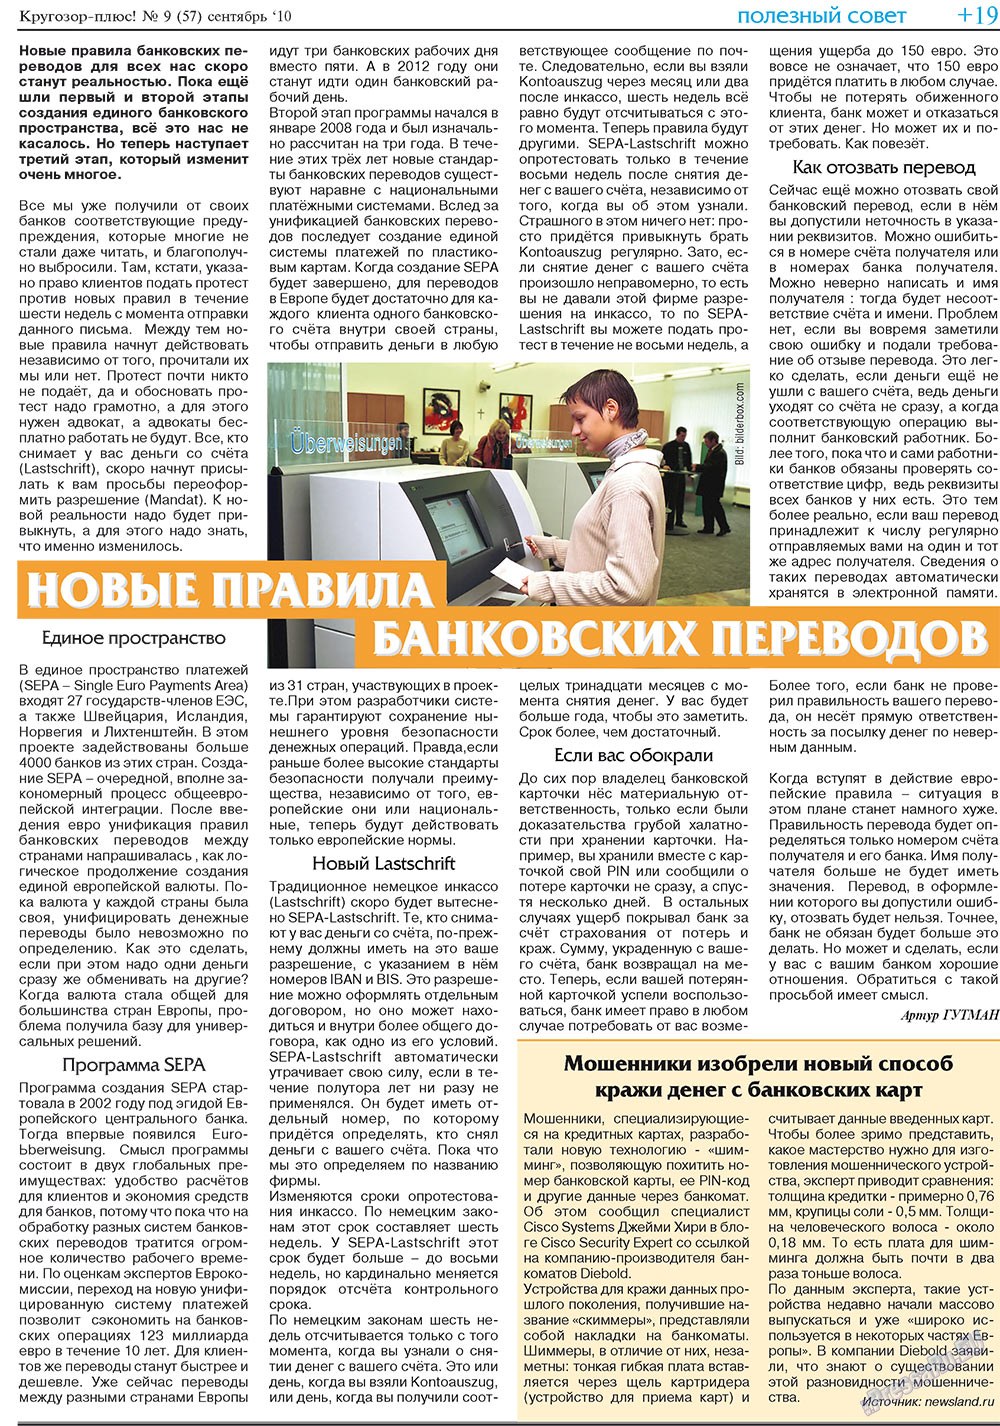 Кругозор плюс!, газета. 2010 №9 стр.35